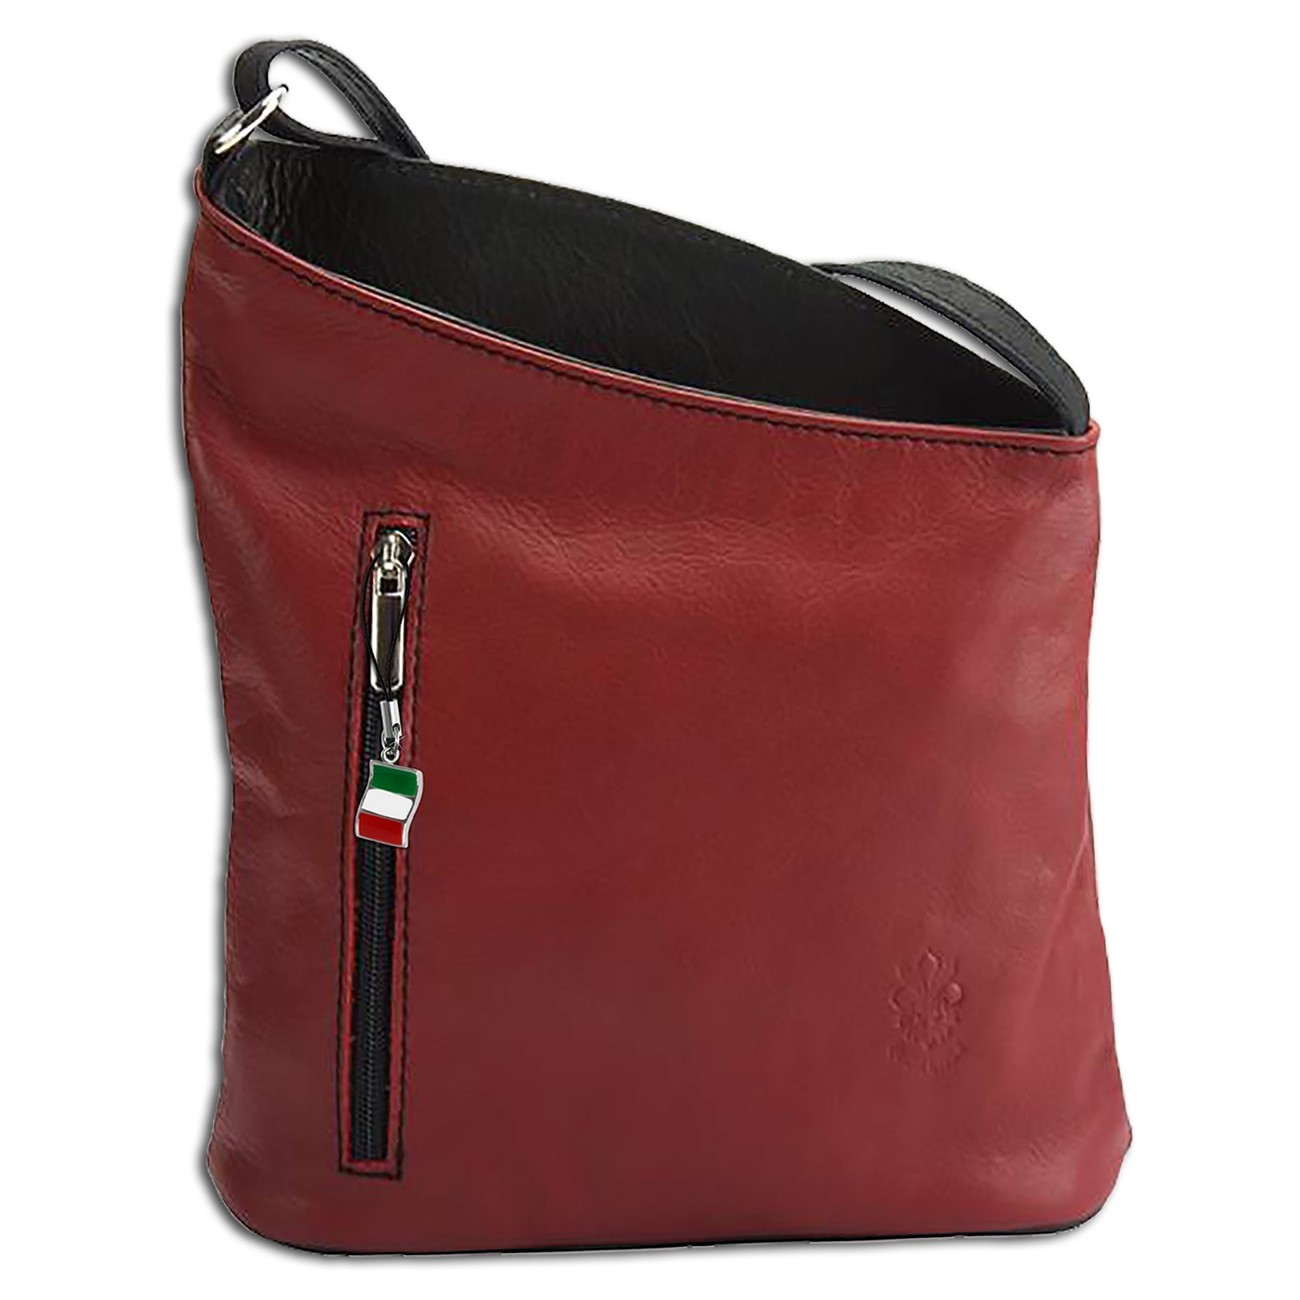 Florence kleine Umhängetasche Damen Handtasche echtes Leder rot schwarz OTF114R